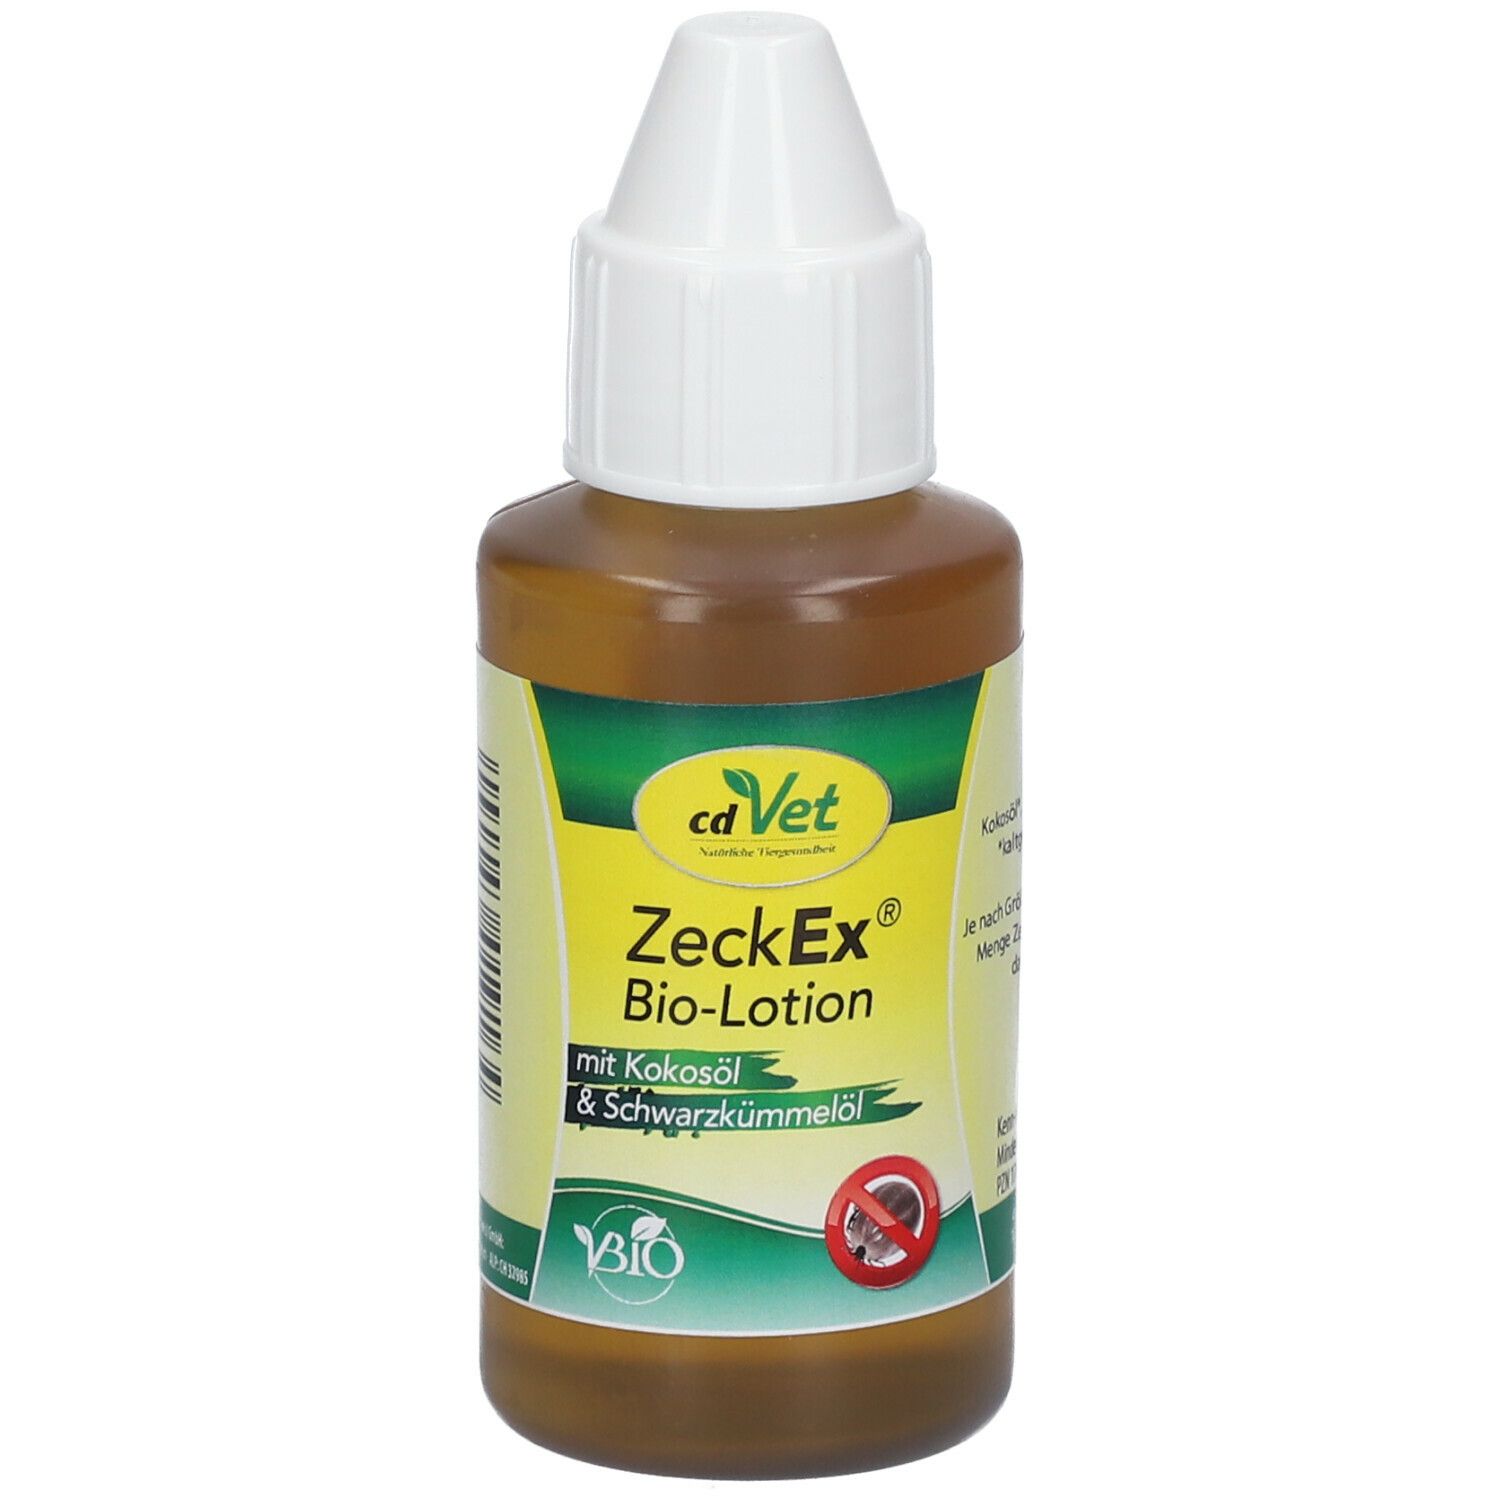 Image of cdVet ZeckEx® Bio-Lotion